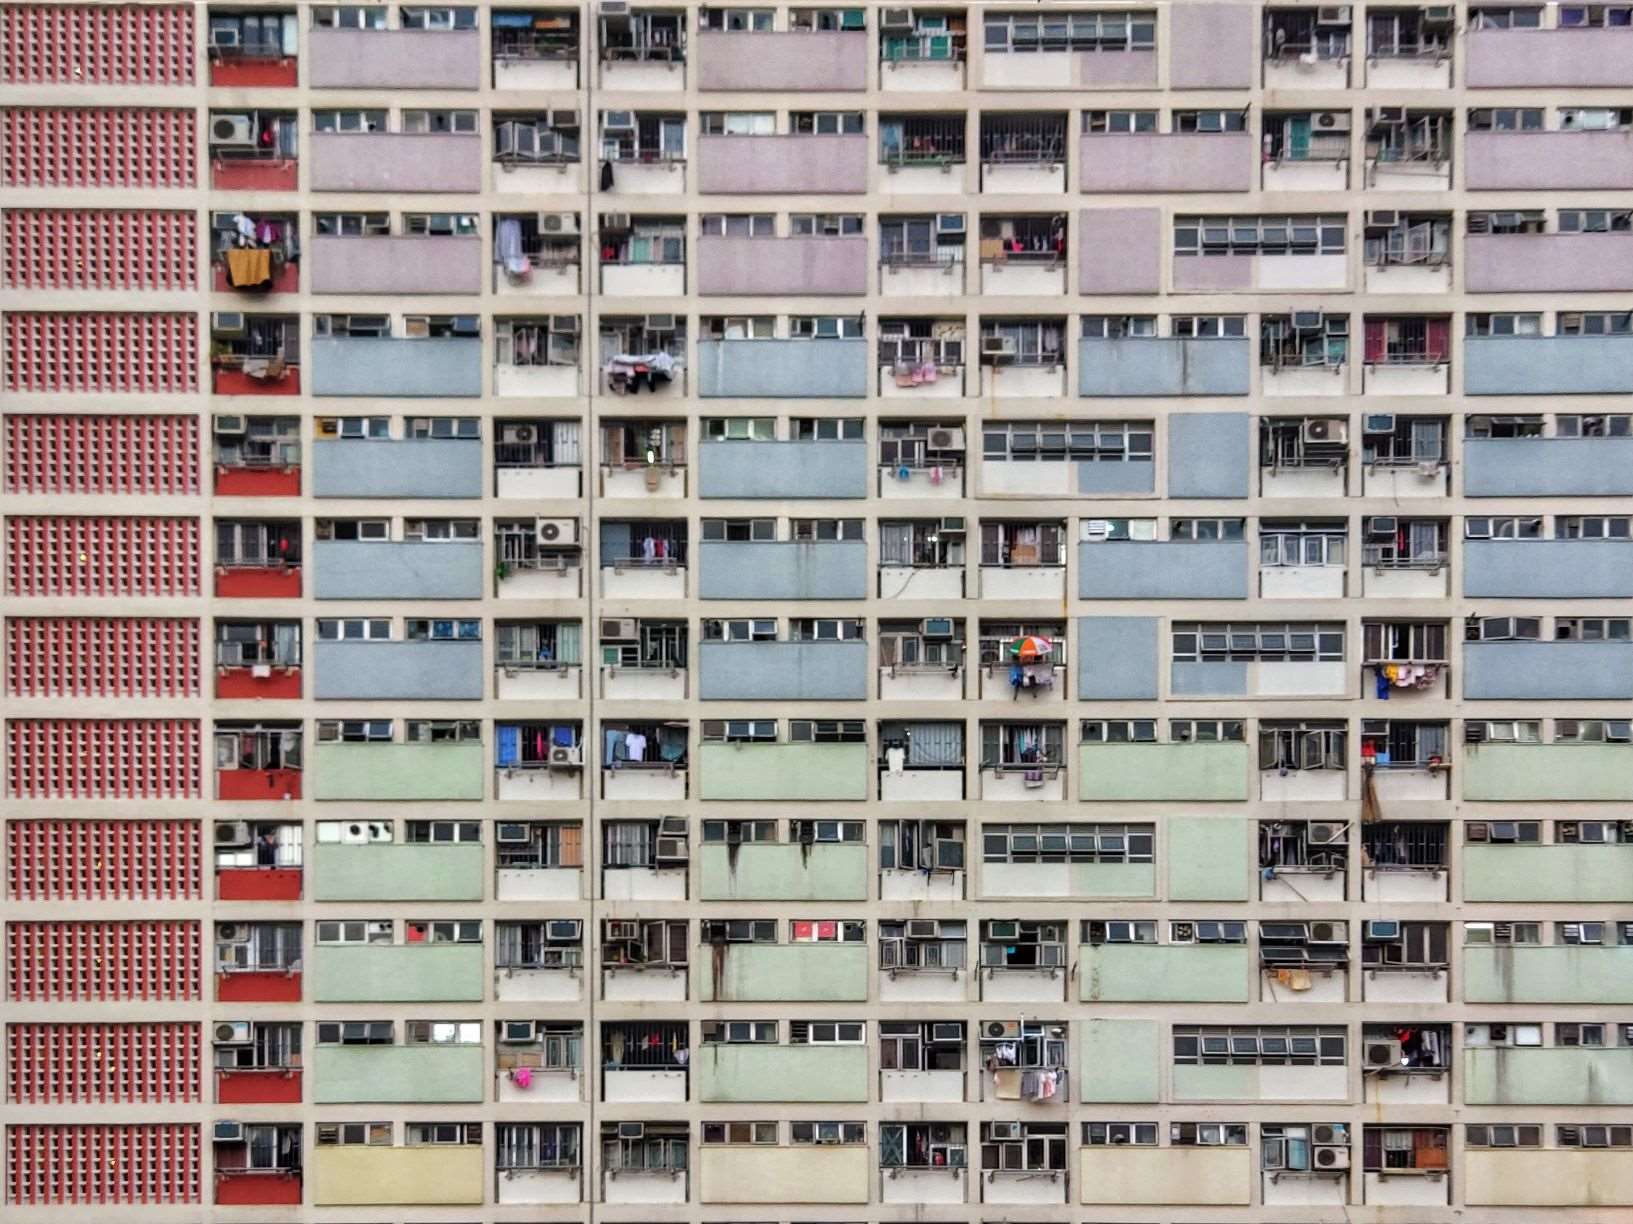 Hong Kong Public Housing